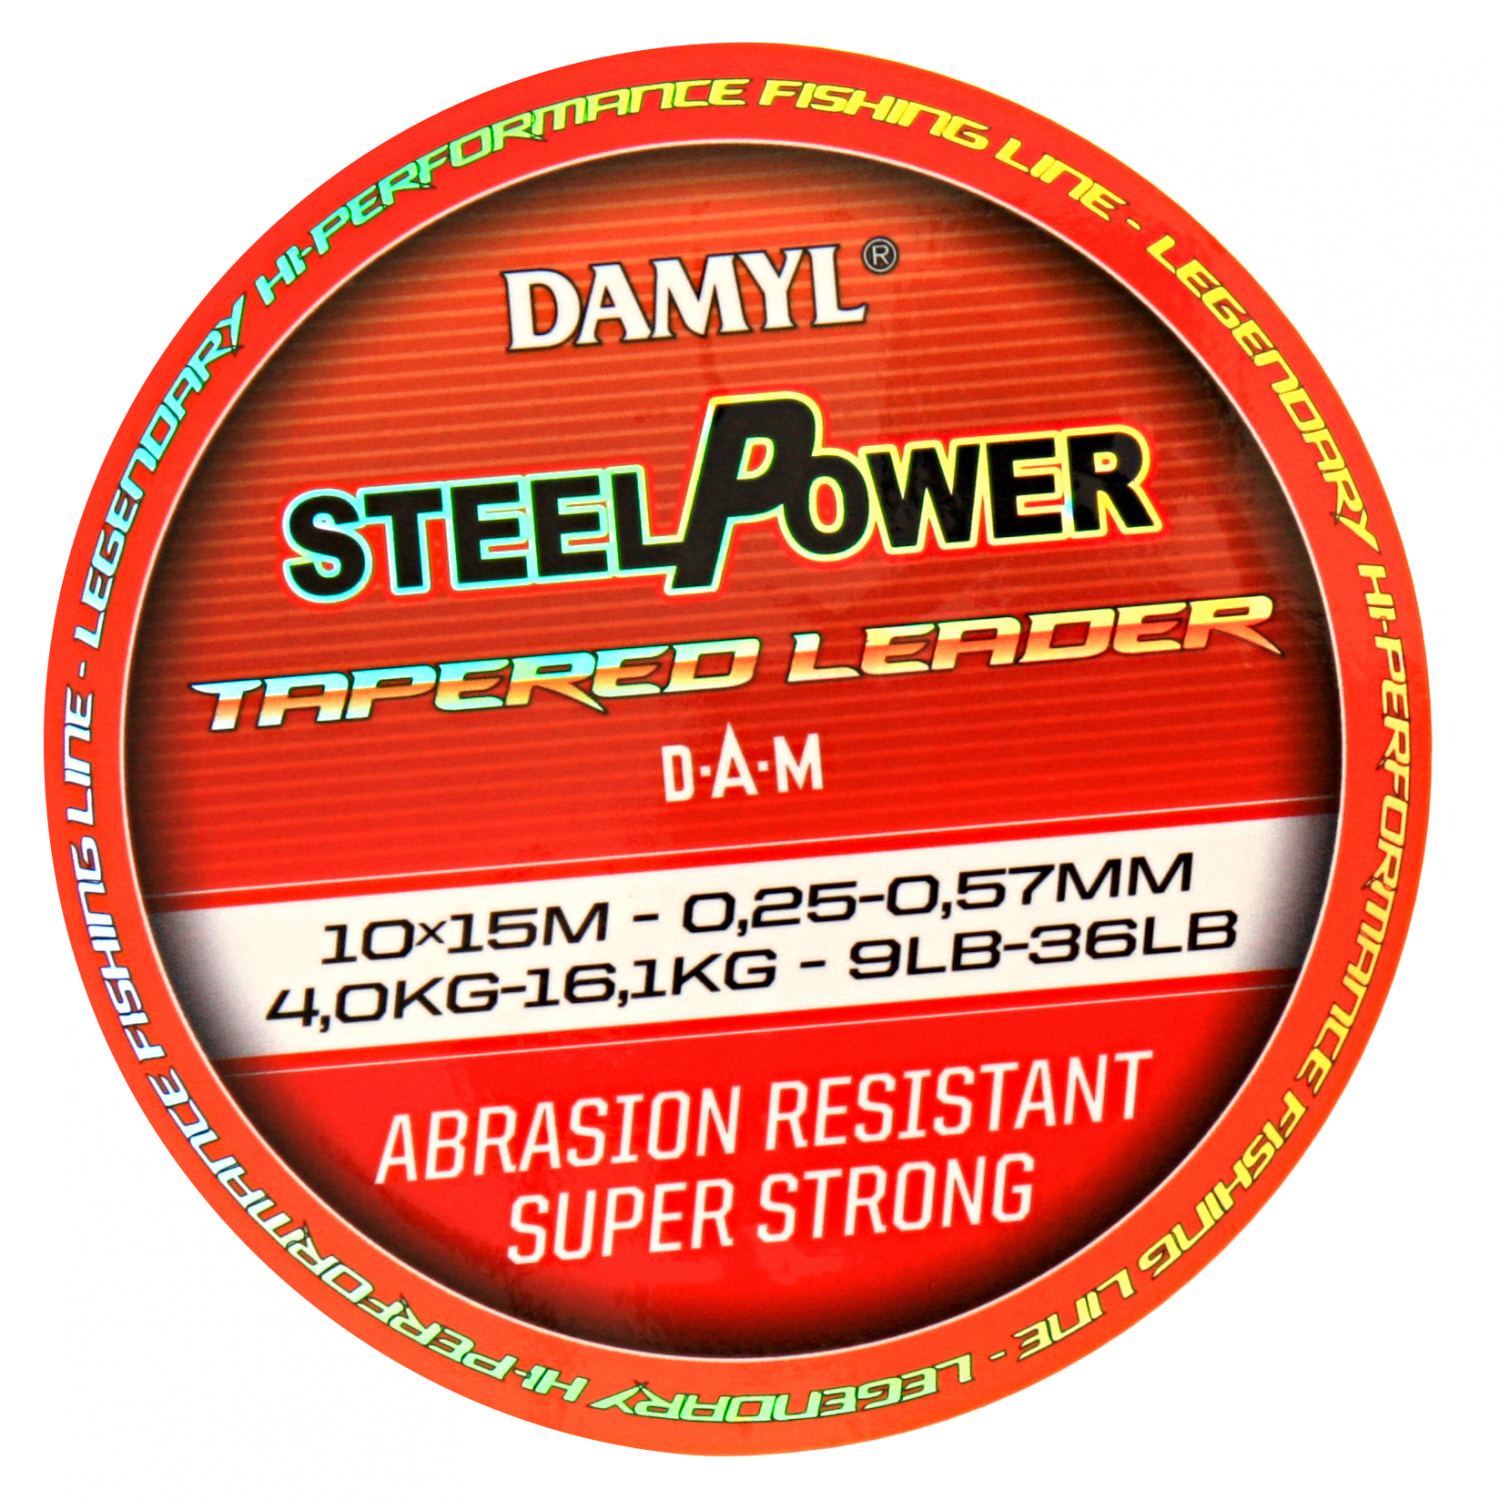 Steelpower DAM Damyl Steelpower Tapered Leader 